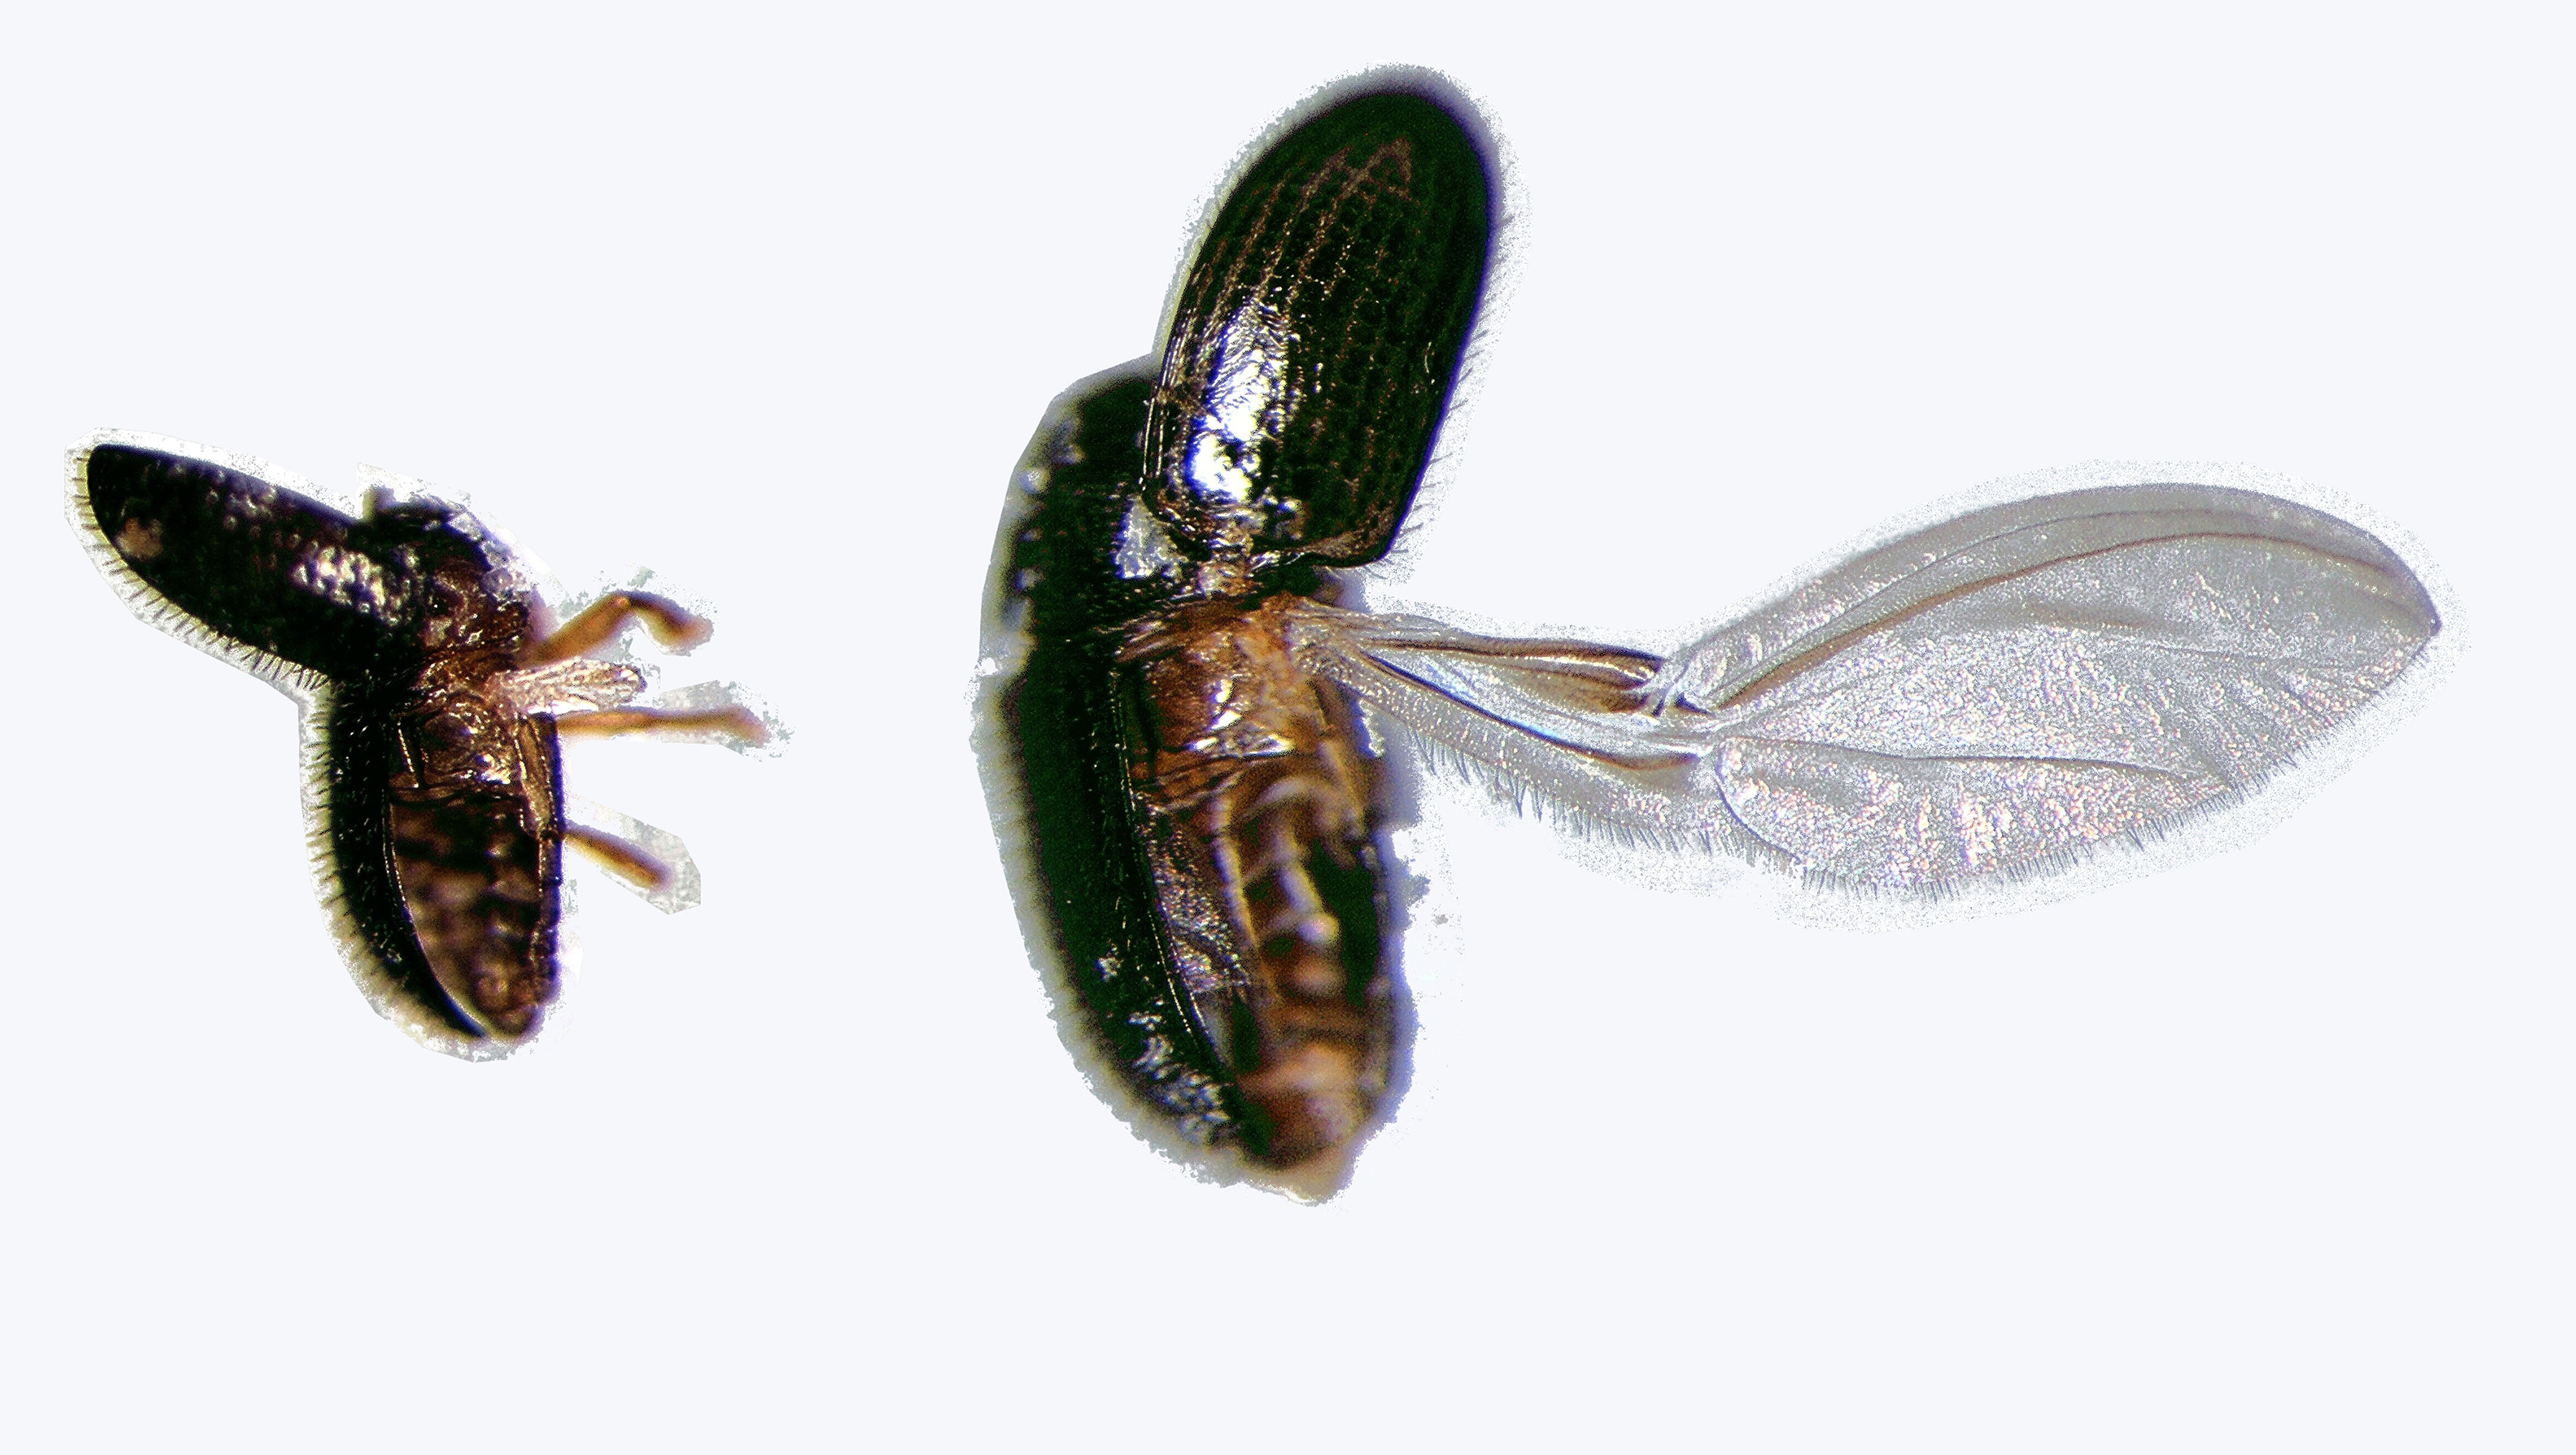 Macho com asas posteriores atrofiadas (esquerda) e fêmea com asas posteriores normais (direita) que possiblitam o voo. Foto: Paulo Rebelles Reis.